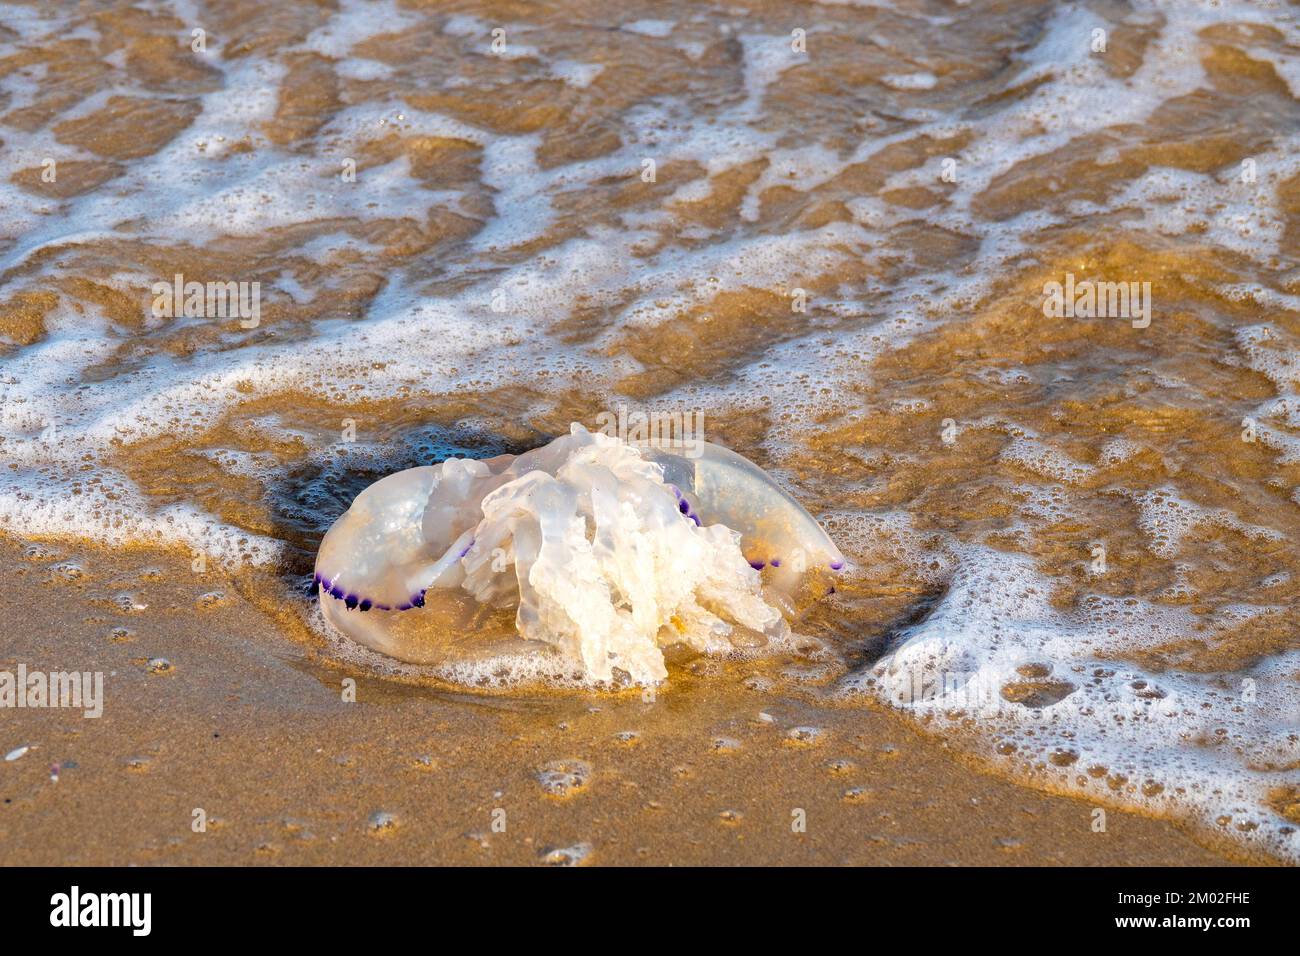 Rhizostoma Pulmo washed ashore at Silvi Marina, Italy Stock Photo